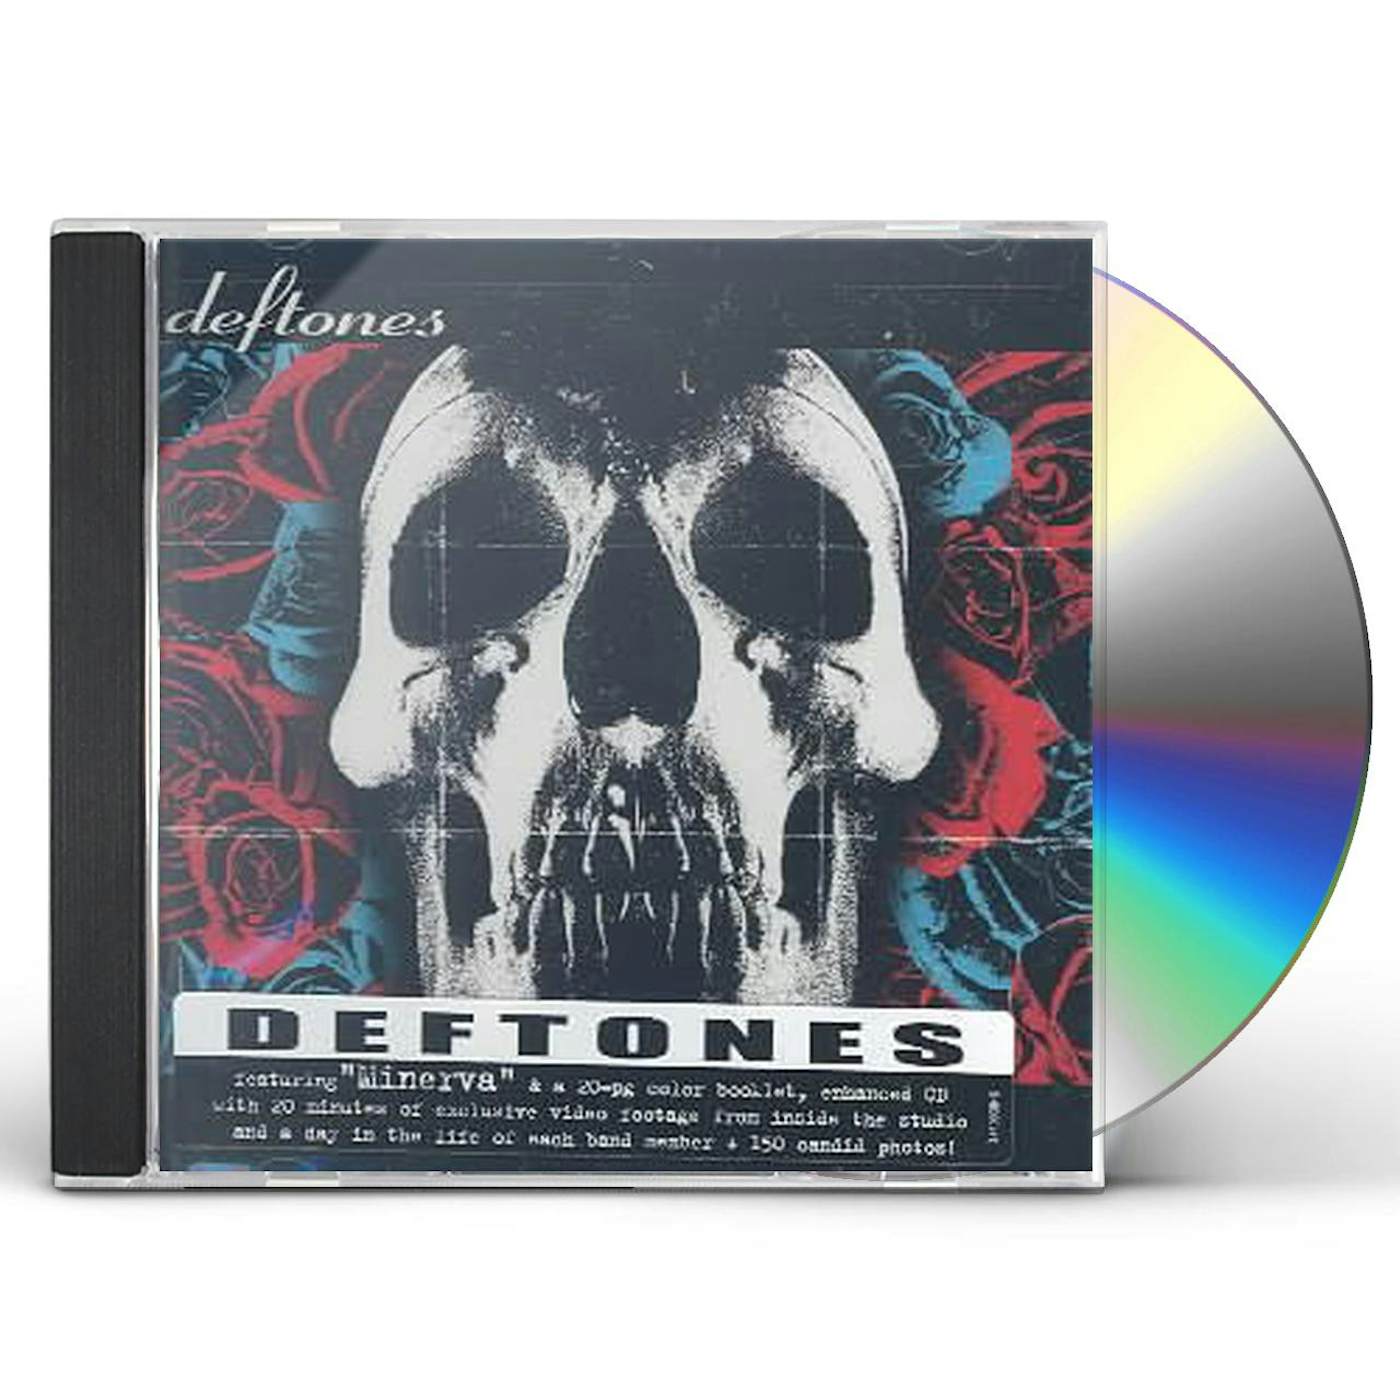 Deftones CD